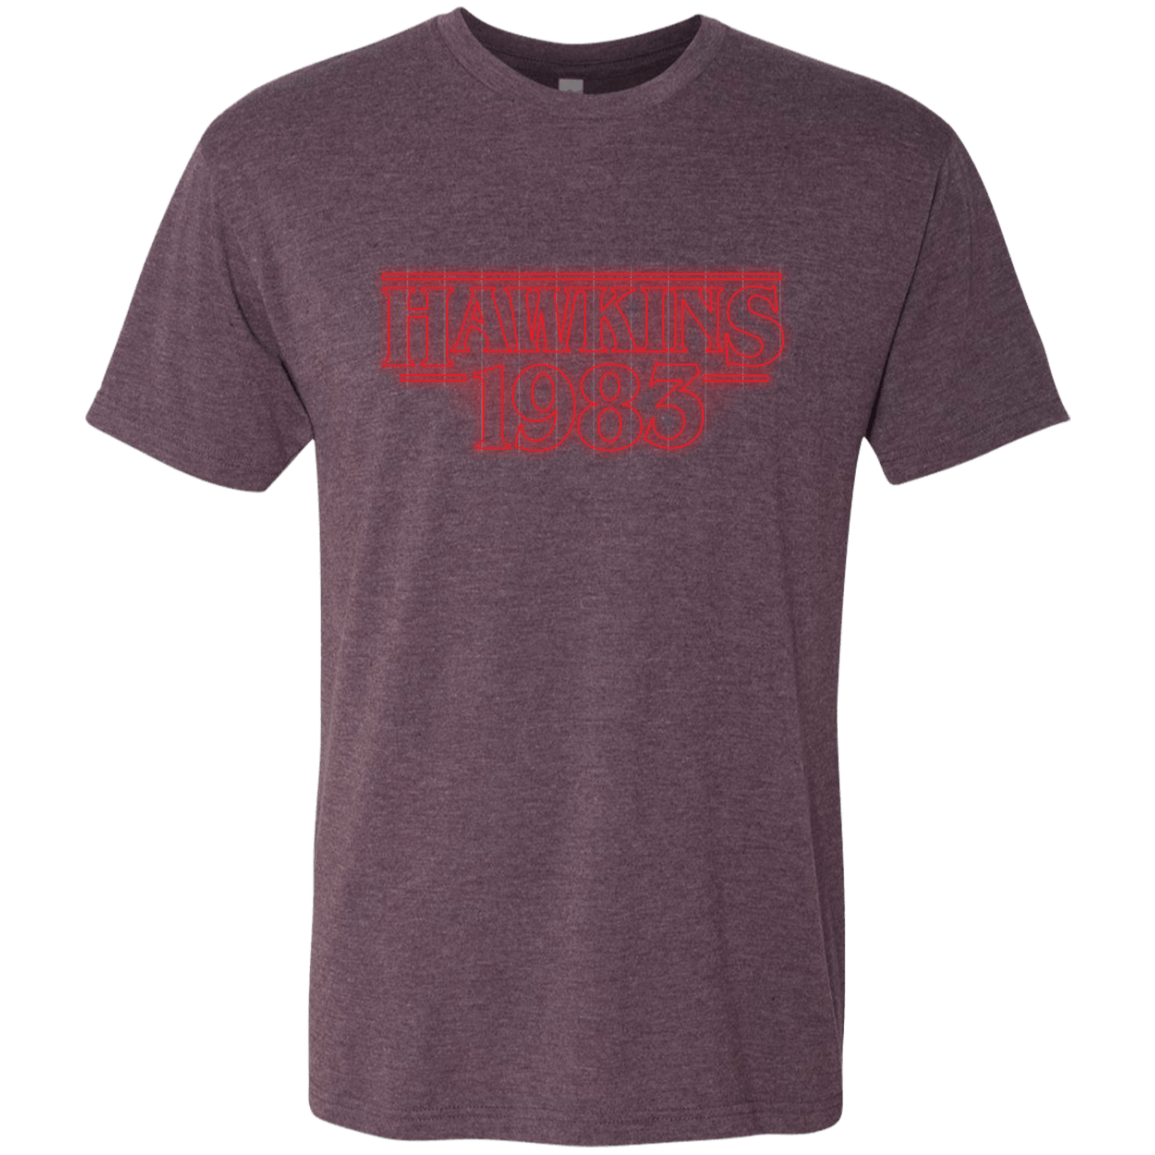 T-Shirts Vintage Purple / Small Hawkins 83 Men's Triblend T-Shirt